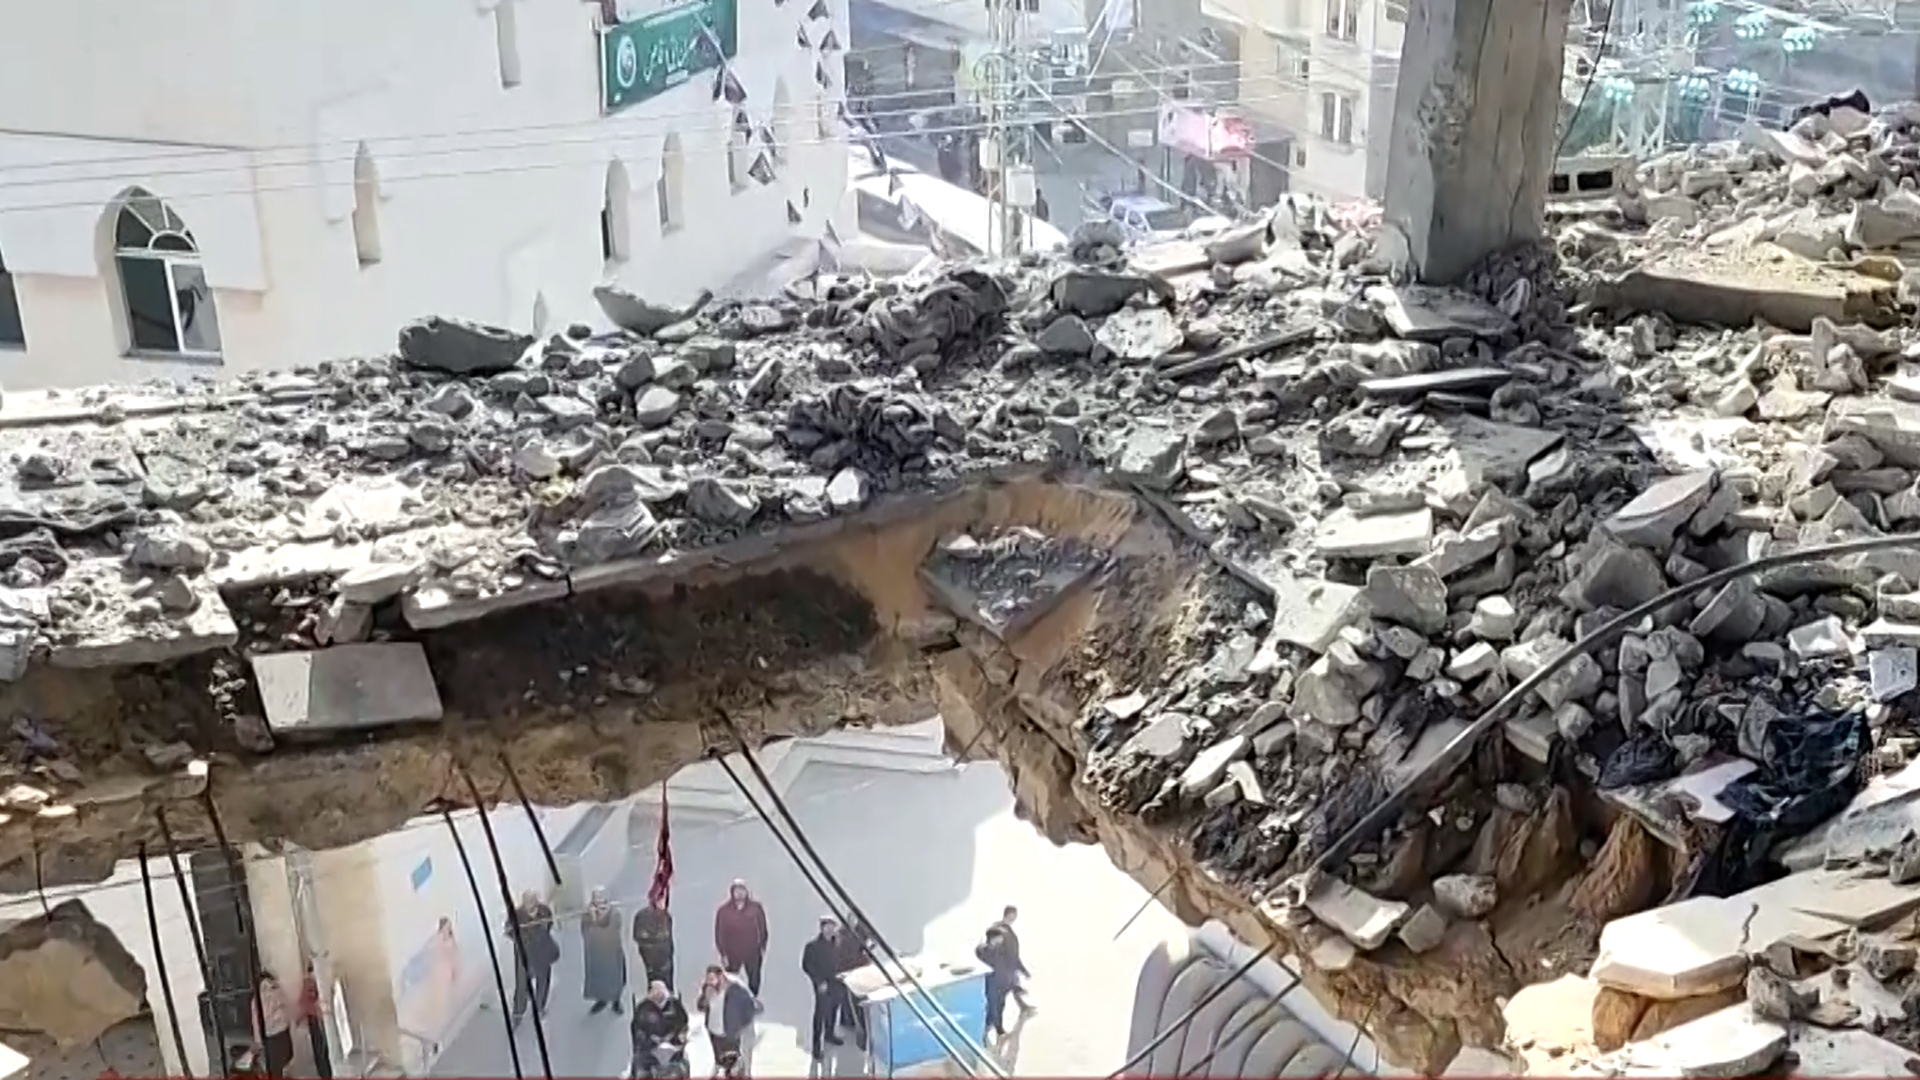 استشهاد 15 فلسطينيا وإصابة العشرات في قصف إسرائيلي استهدف منزلا يضم نازحين | البرامج – البوكس نيوز